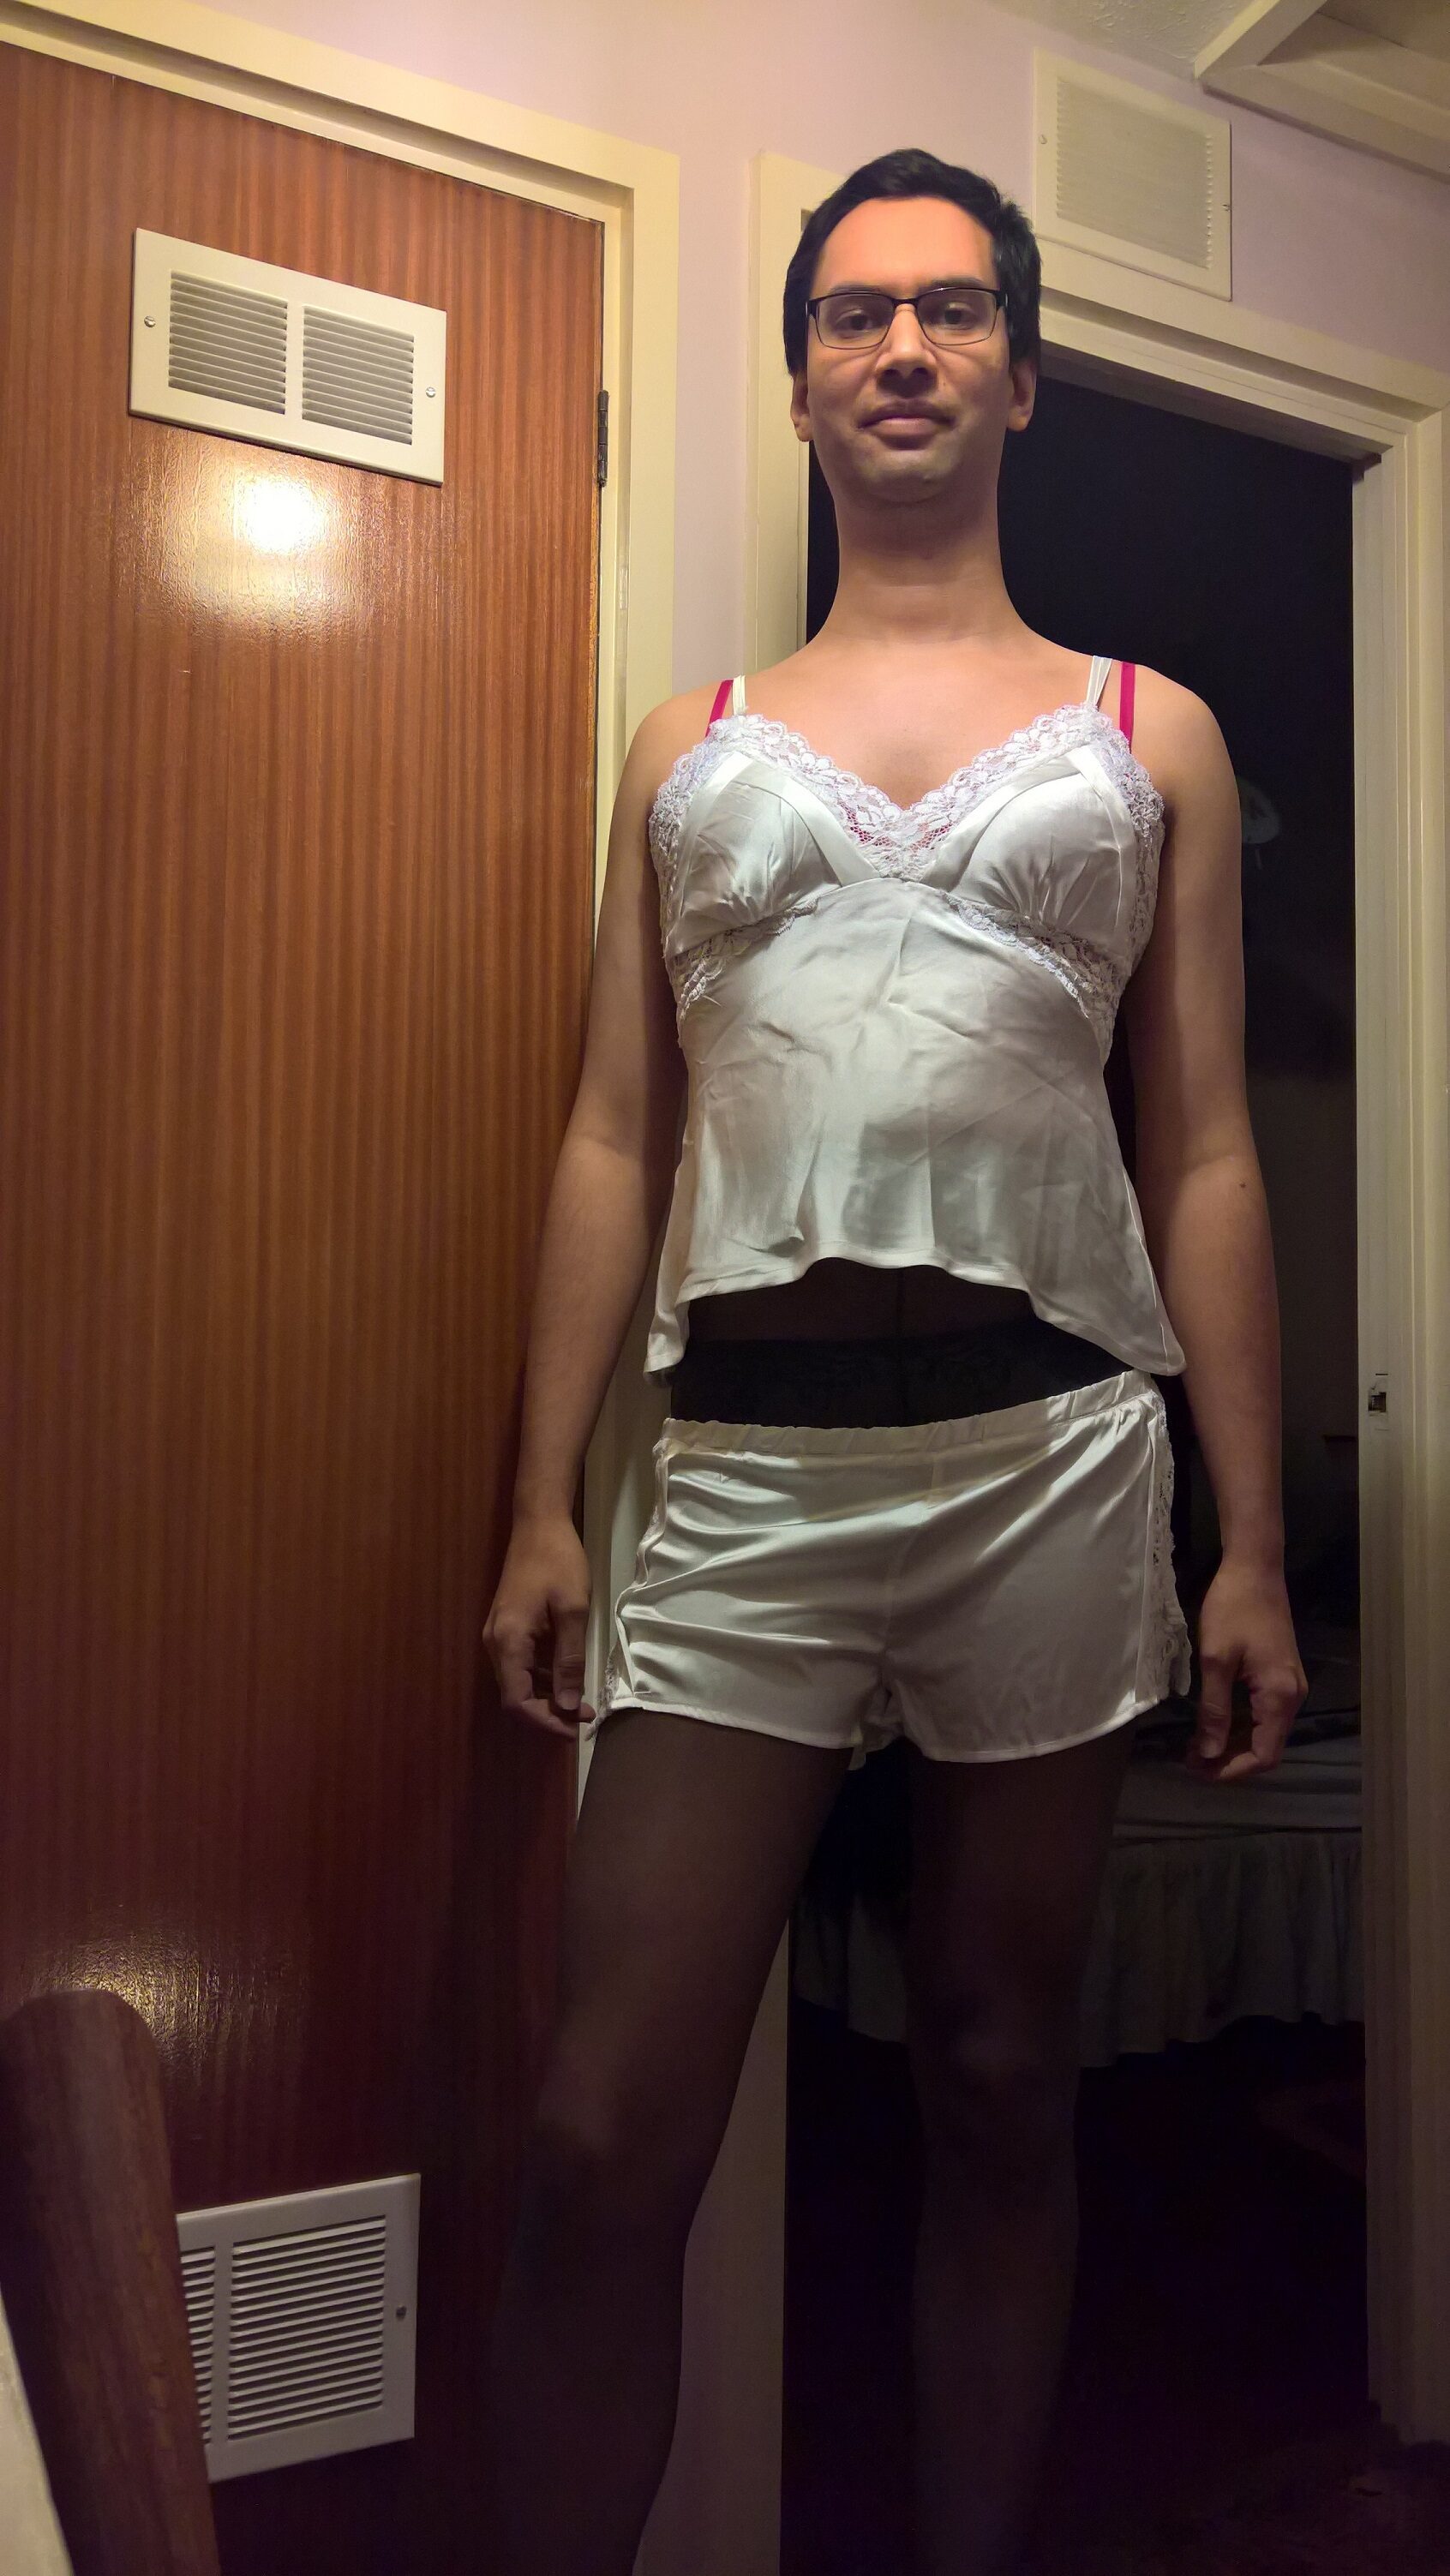 Katie Savira - a boy in women's underwear